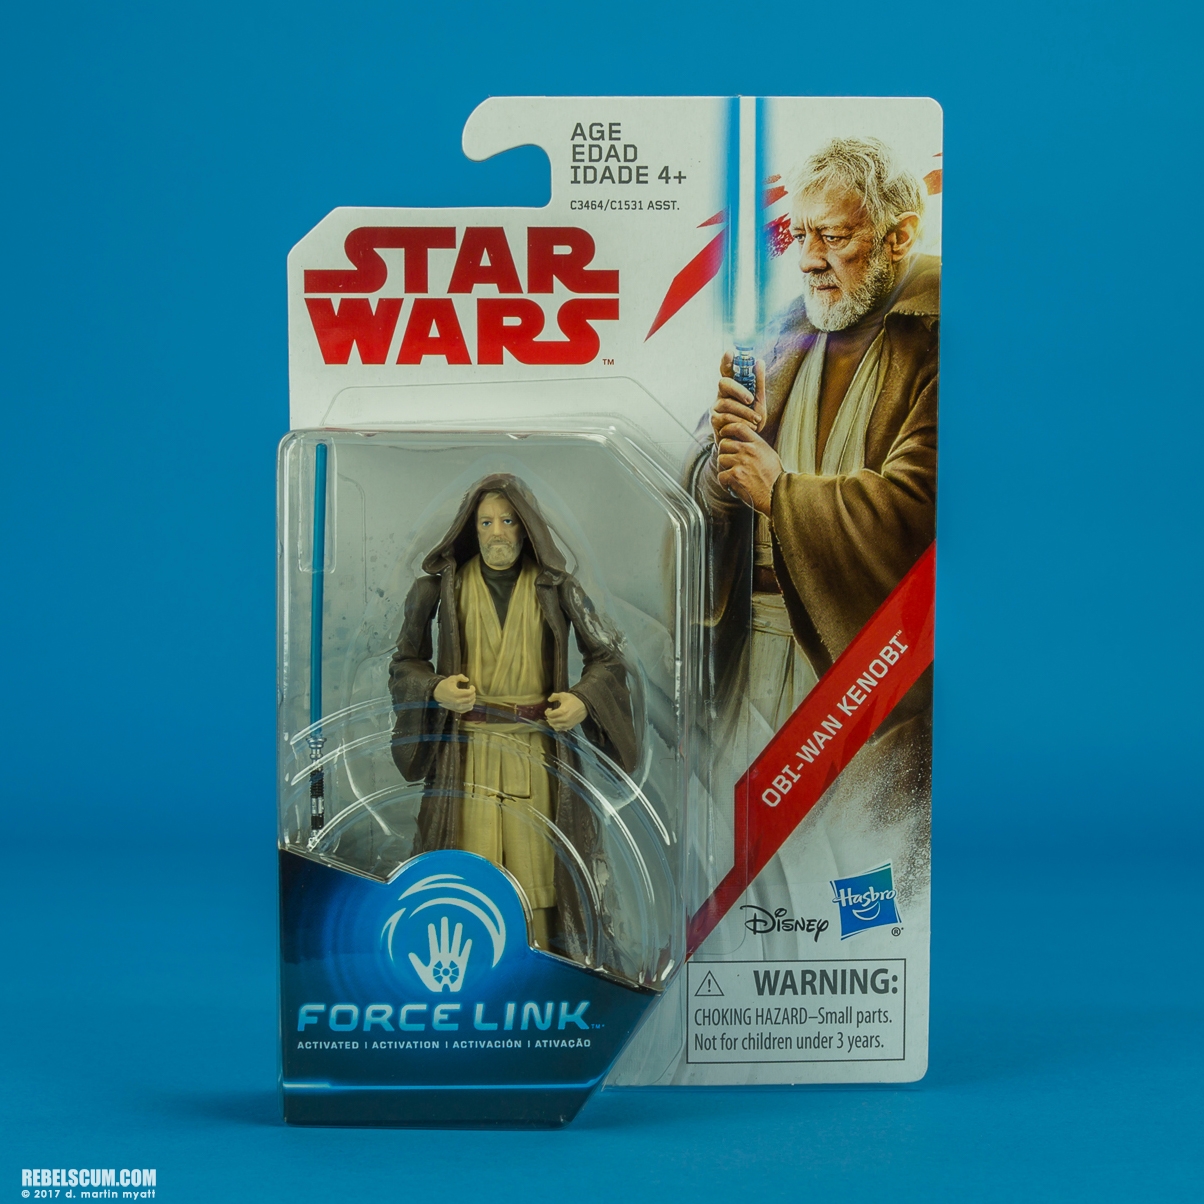 Obi-Wan-Kenobi-Star-Wars-Universe-The-Last-Jedi-014.jpg